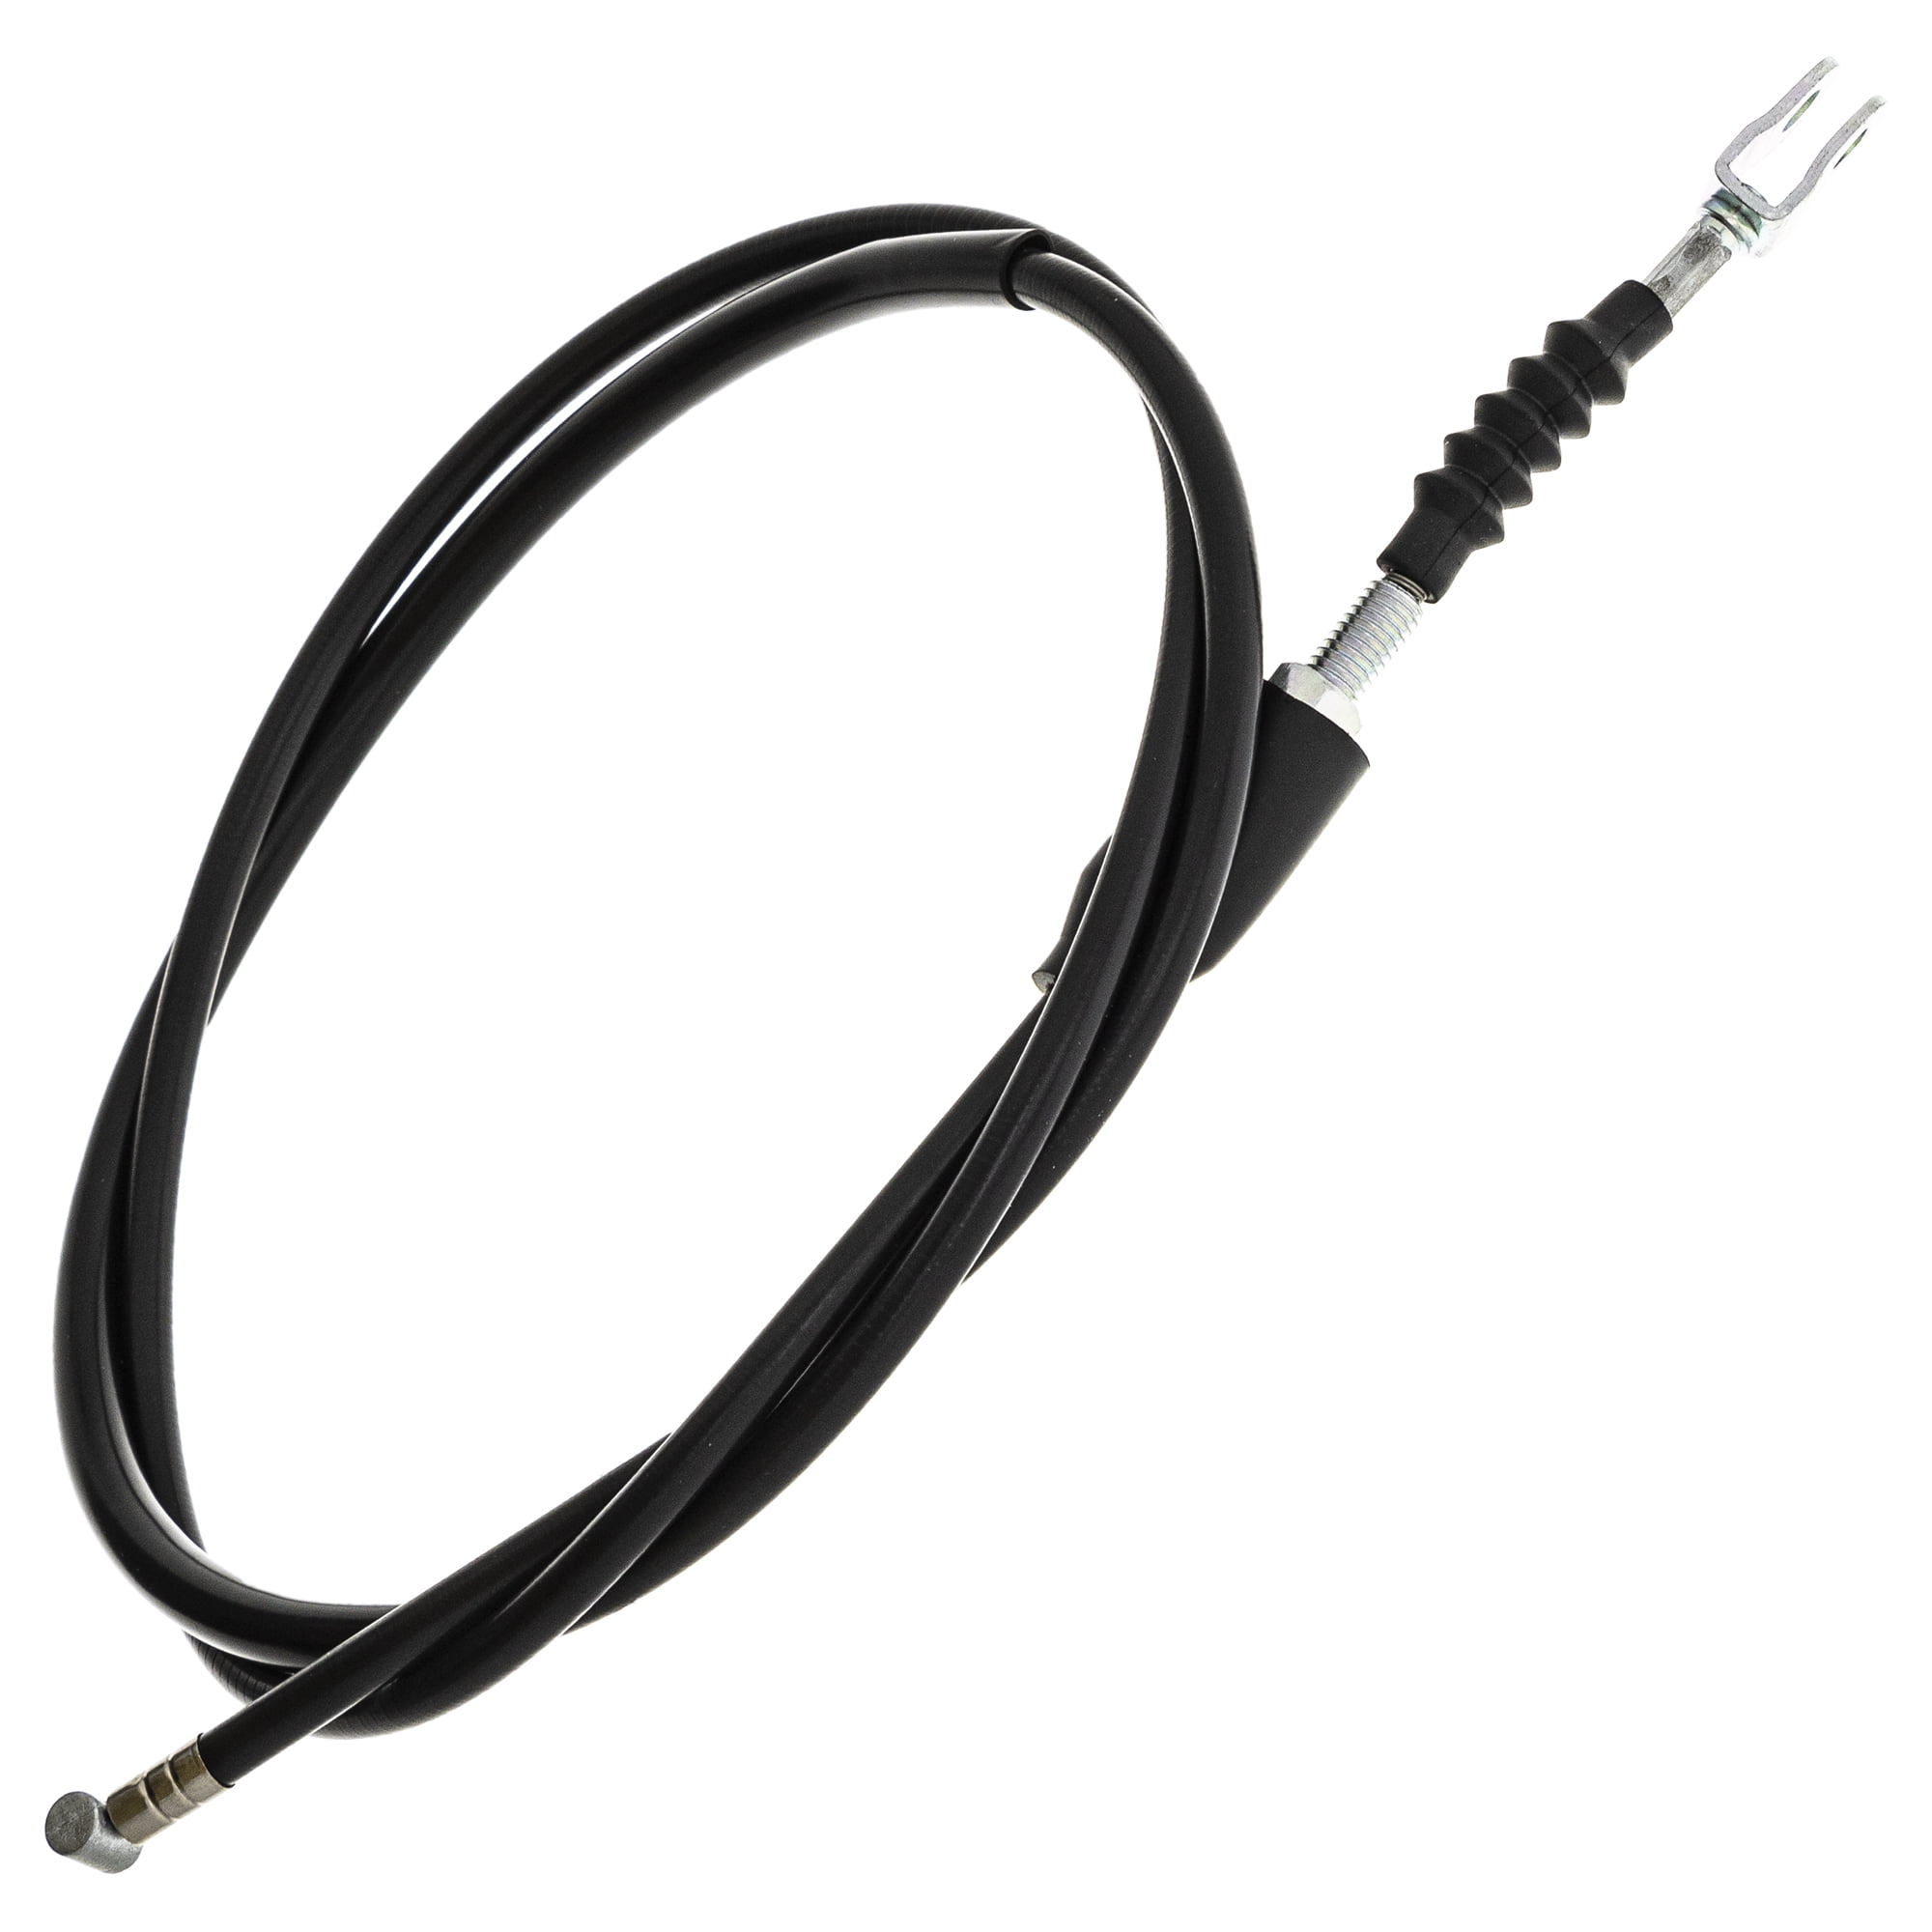 NICHE Clutch Cable for Suzuki GS1000GL GS1100L GS750L 1980-1981 58200-49230 58200-49140 58200-45210 58200-49140 